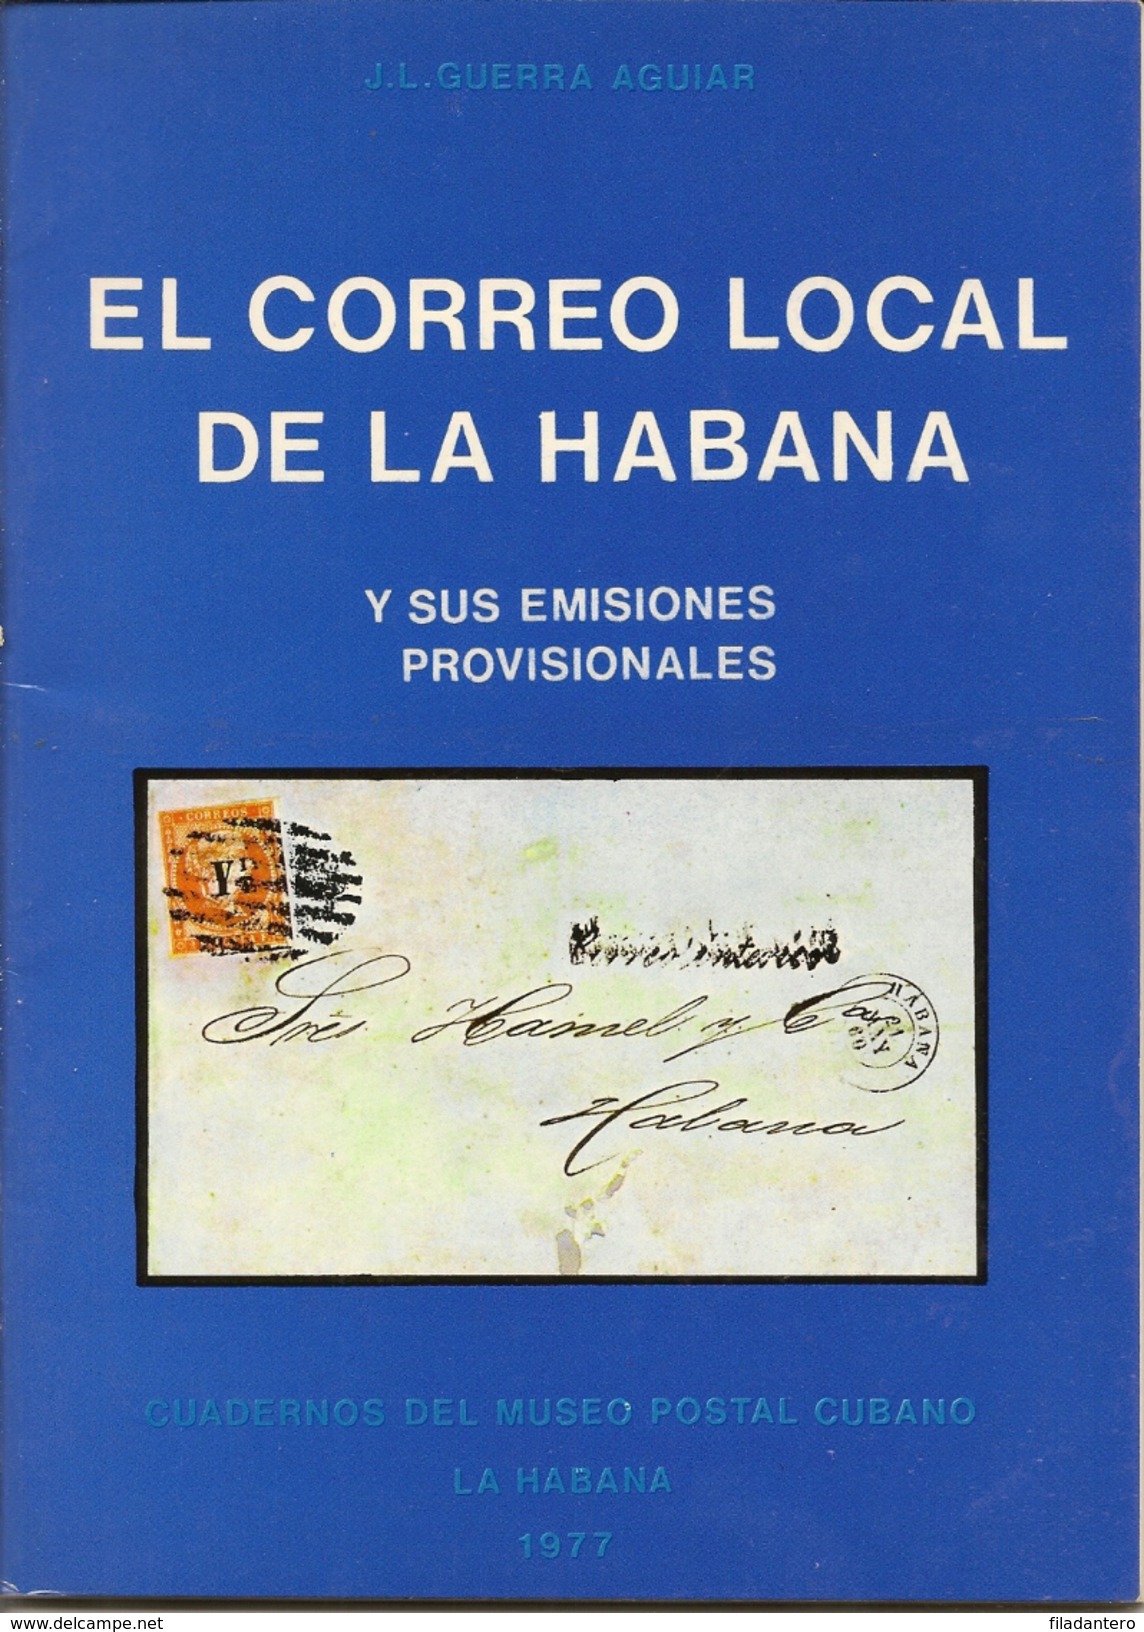 Obra Filatélica " El Correo Local De La Habana"  1977  J.L. Guerra Aguiar - Motive